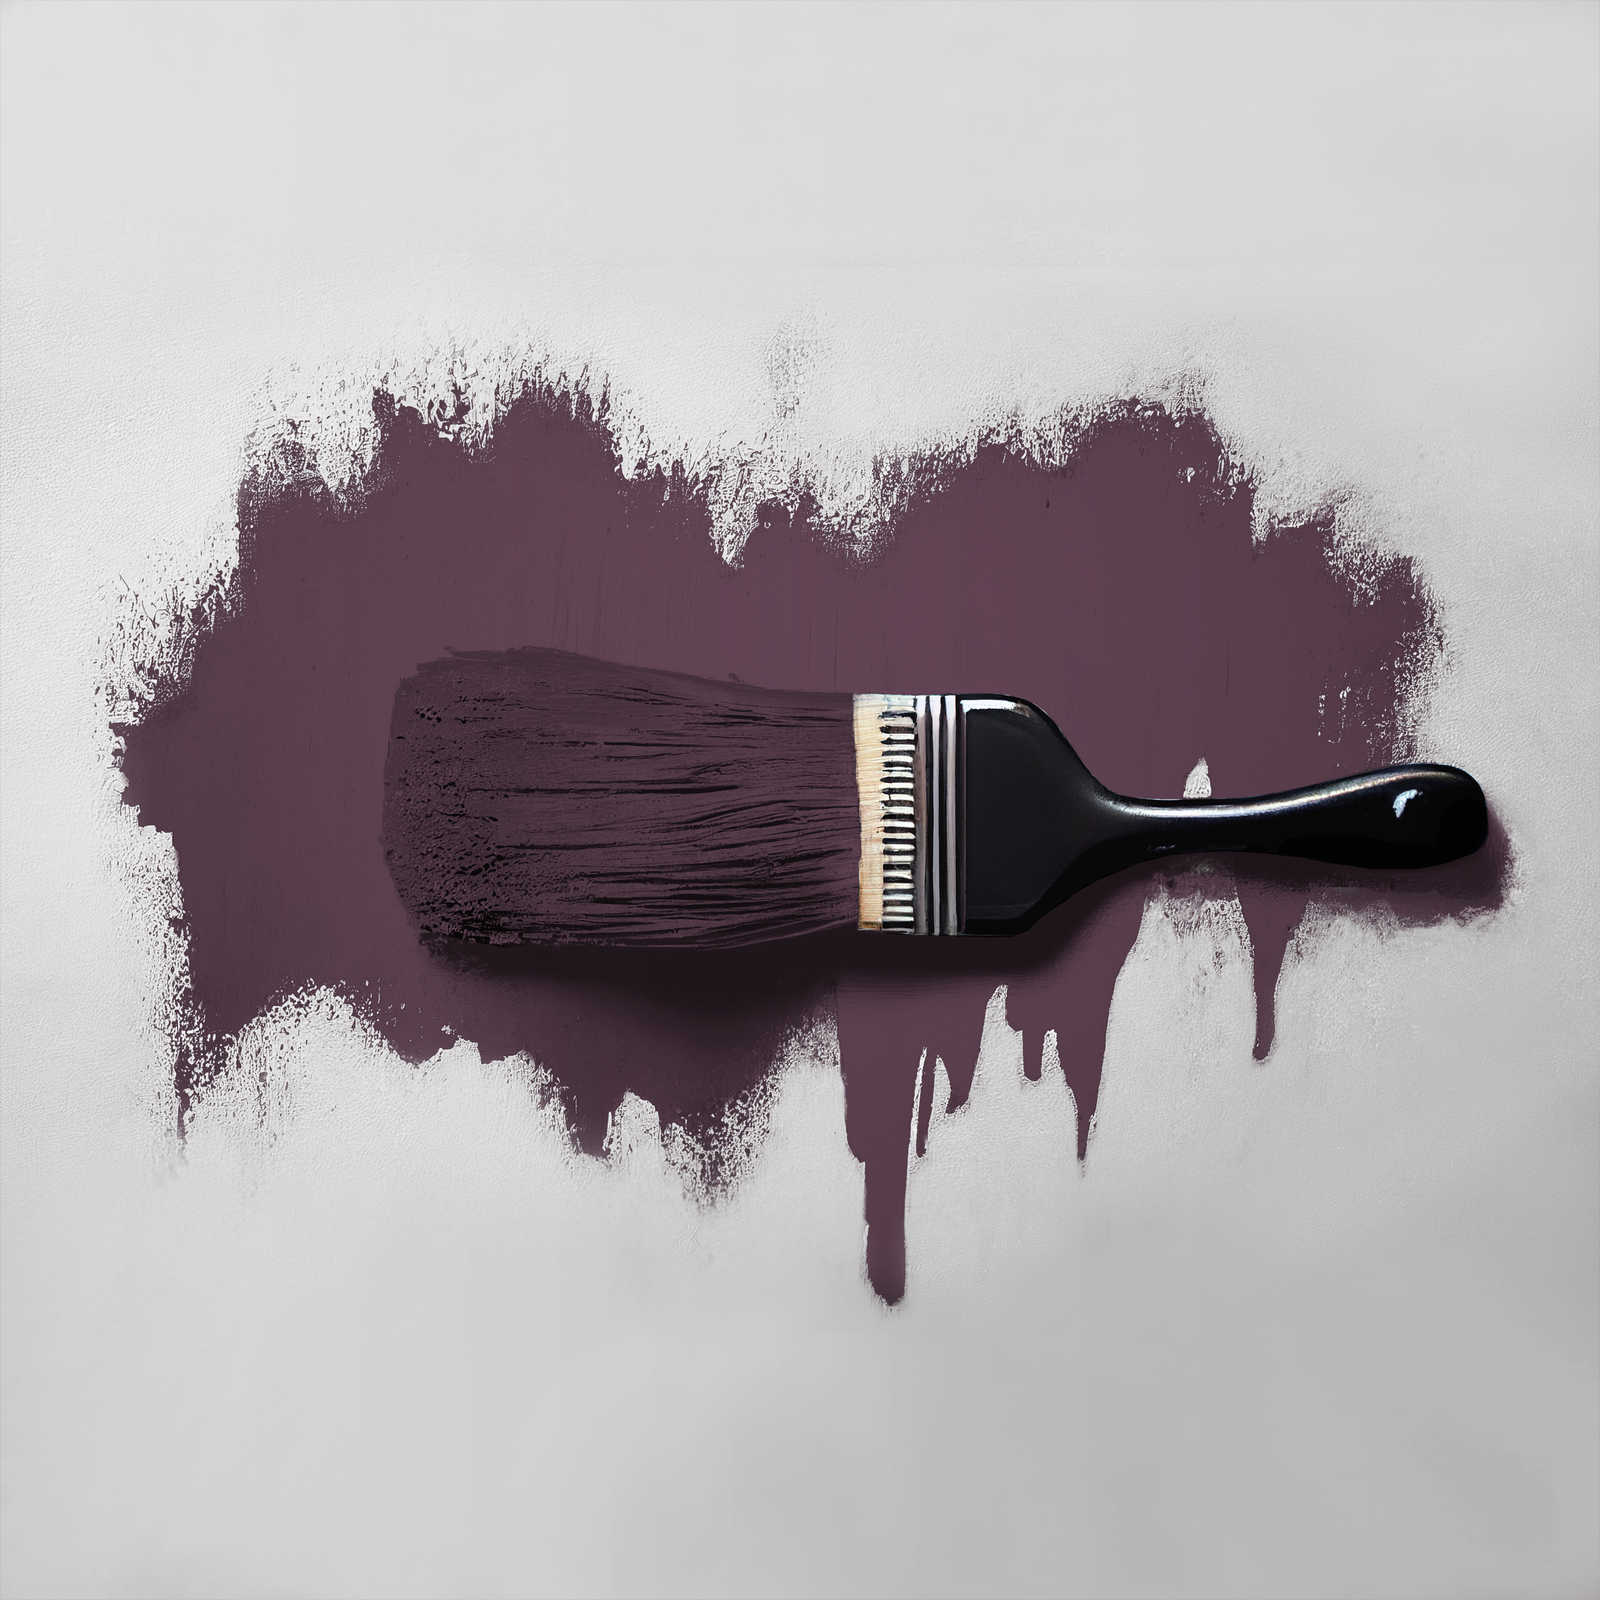             Wandfarbe in einem Zwischenspiel von Violett und Rot »Beady Beetroot« TCK2007 – 5 Liter
        